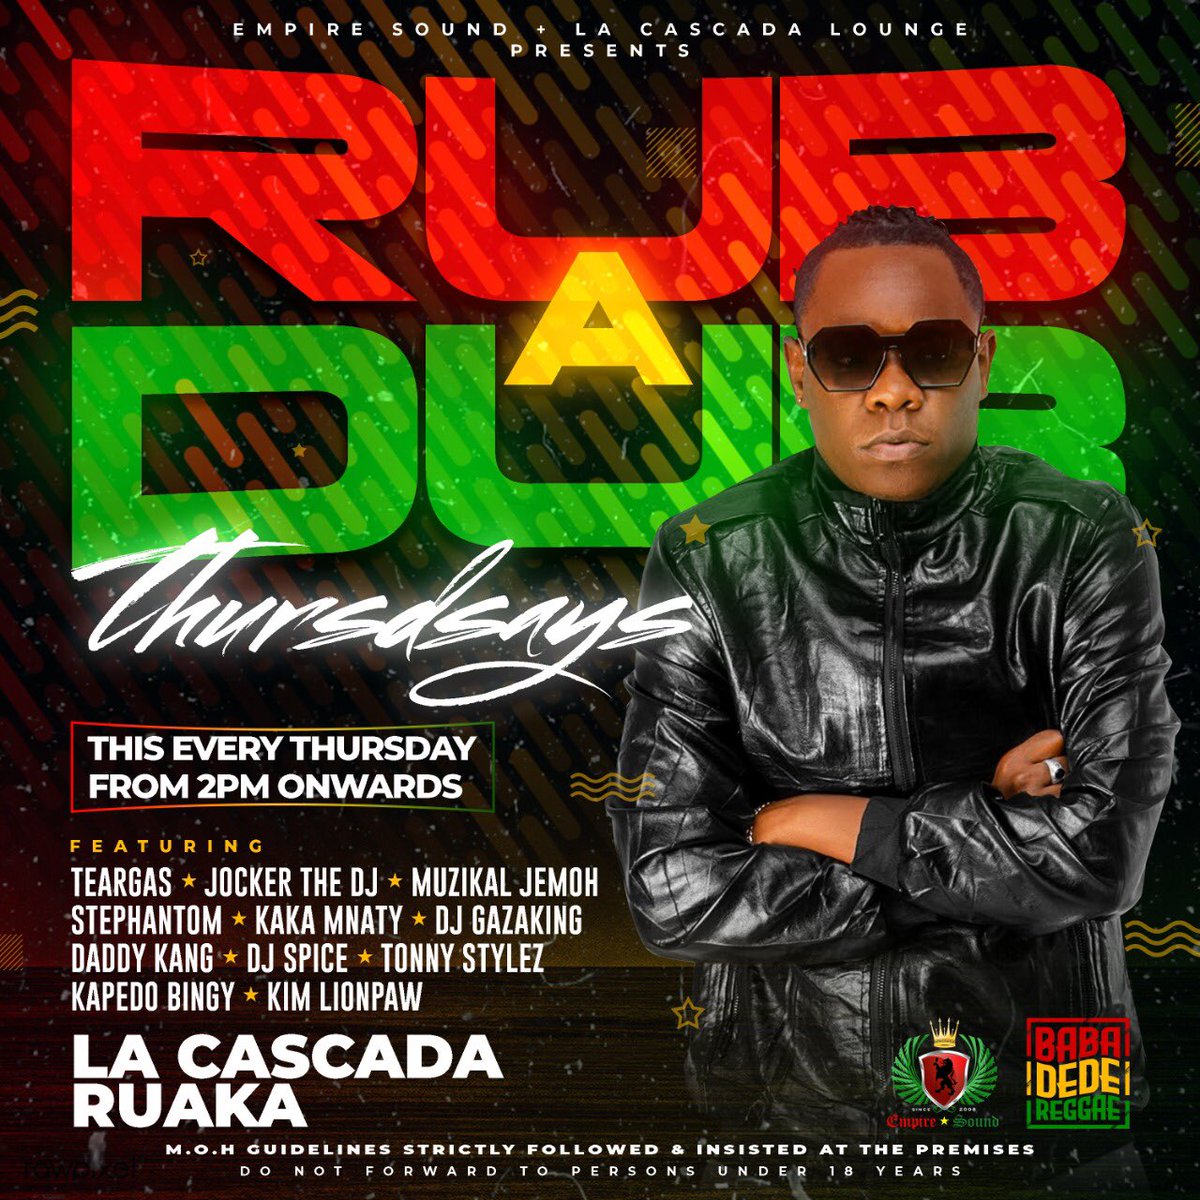 Leo tuko RUAKA @lacascadamiguela #RubADubThursdays link up fam #Betsafe #BabaDedeDjs @baba_dede_reggae